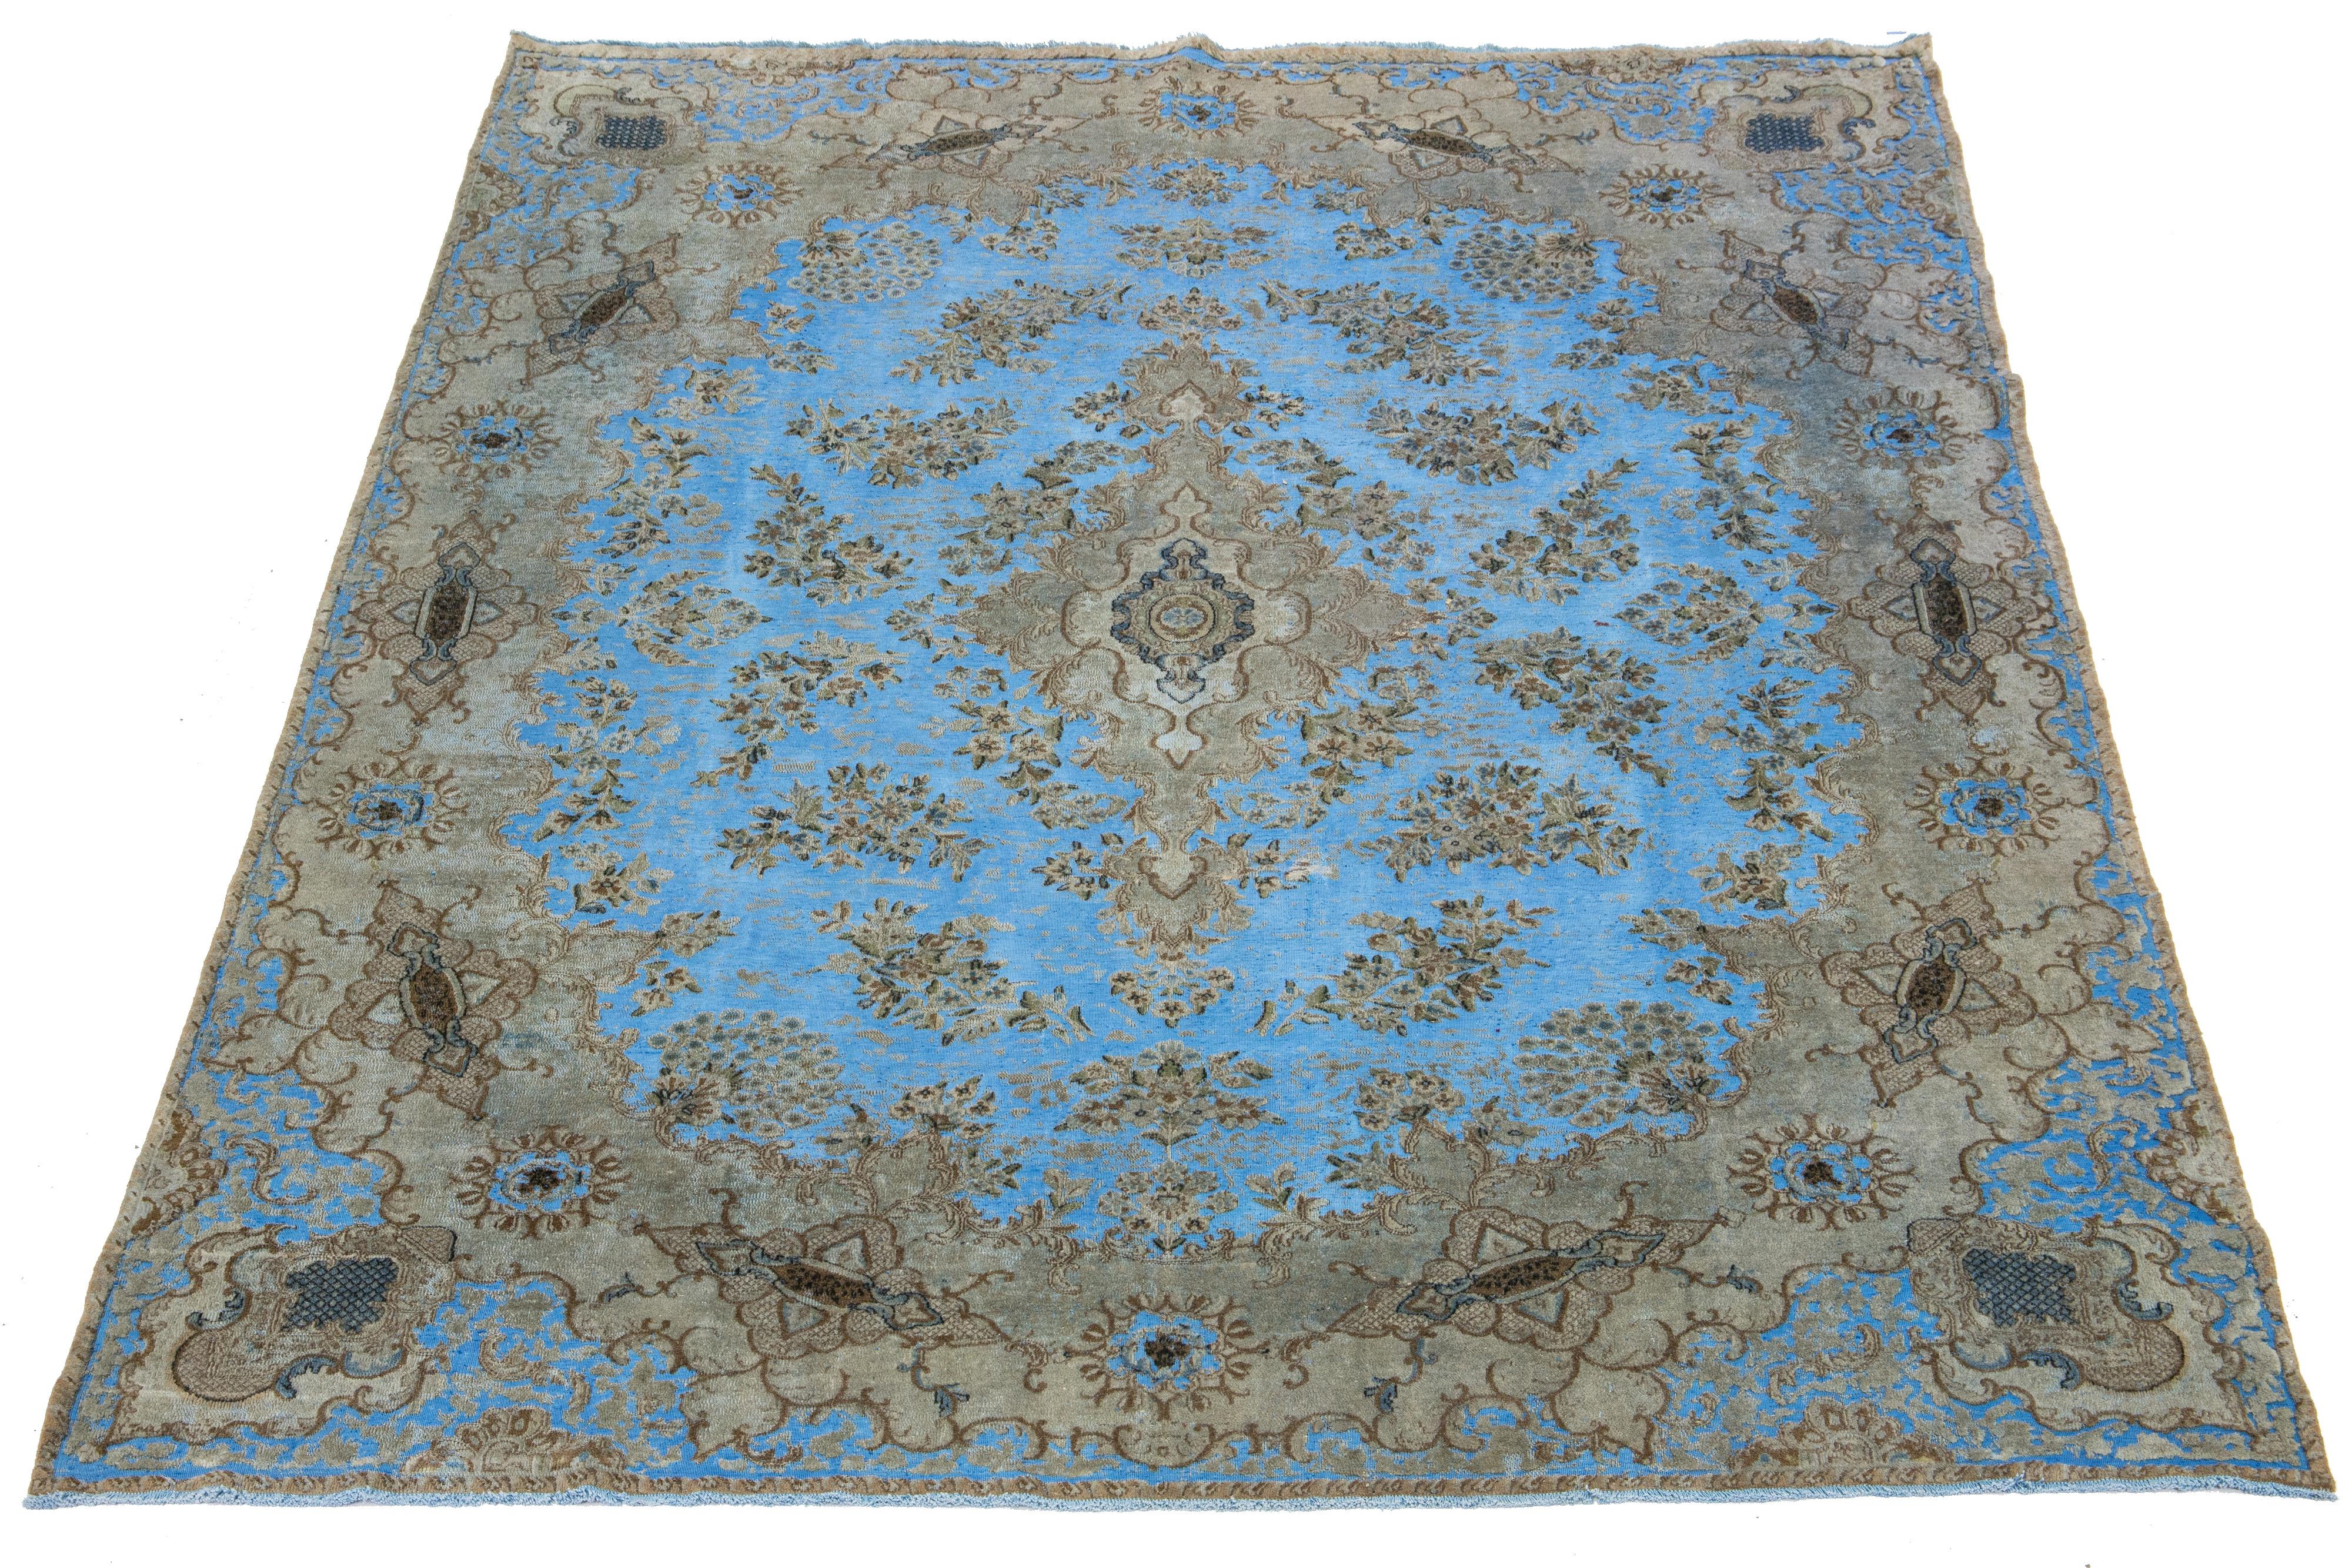 Ce tapis ancien en laine persane présente un motif floral en médaillon bleu clair avec des accents beiges et bruns, le tout noué à la main à la perfection.

Ce tapis mesure 8'9'' x 12'3